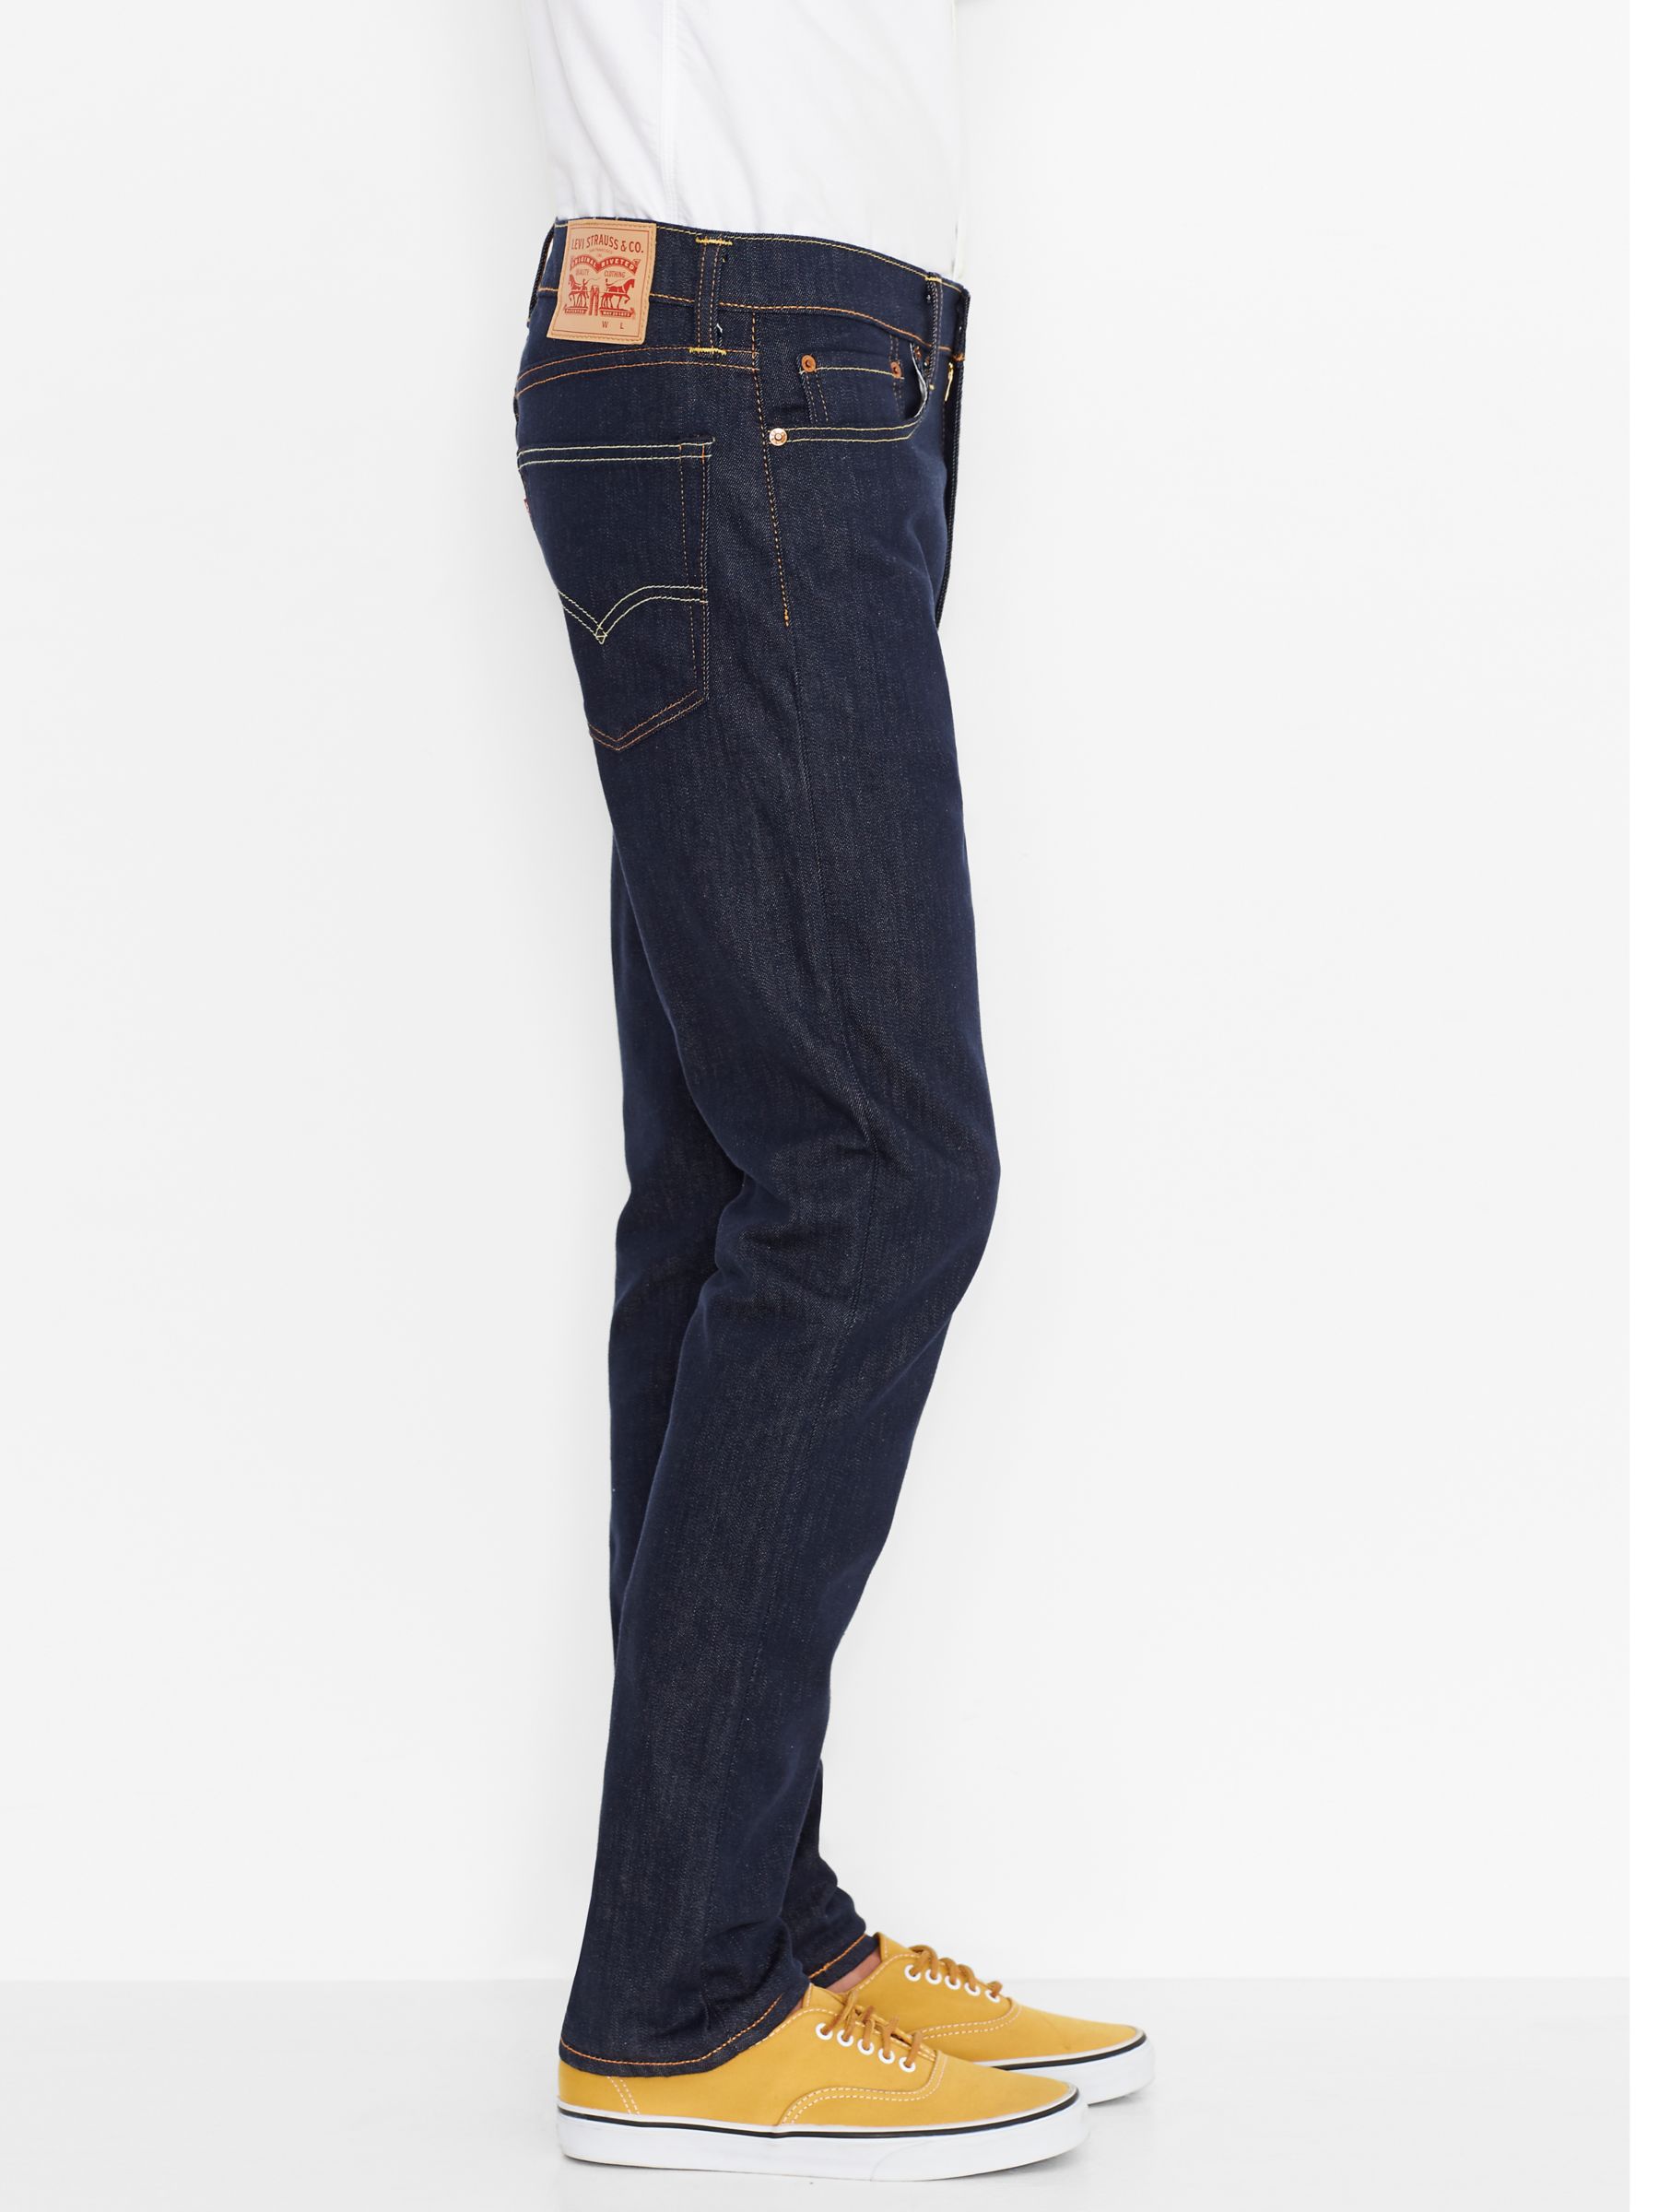 levi's 522 mens jeans